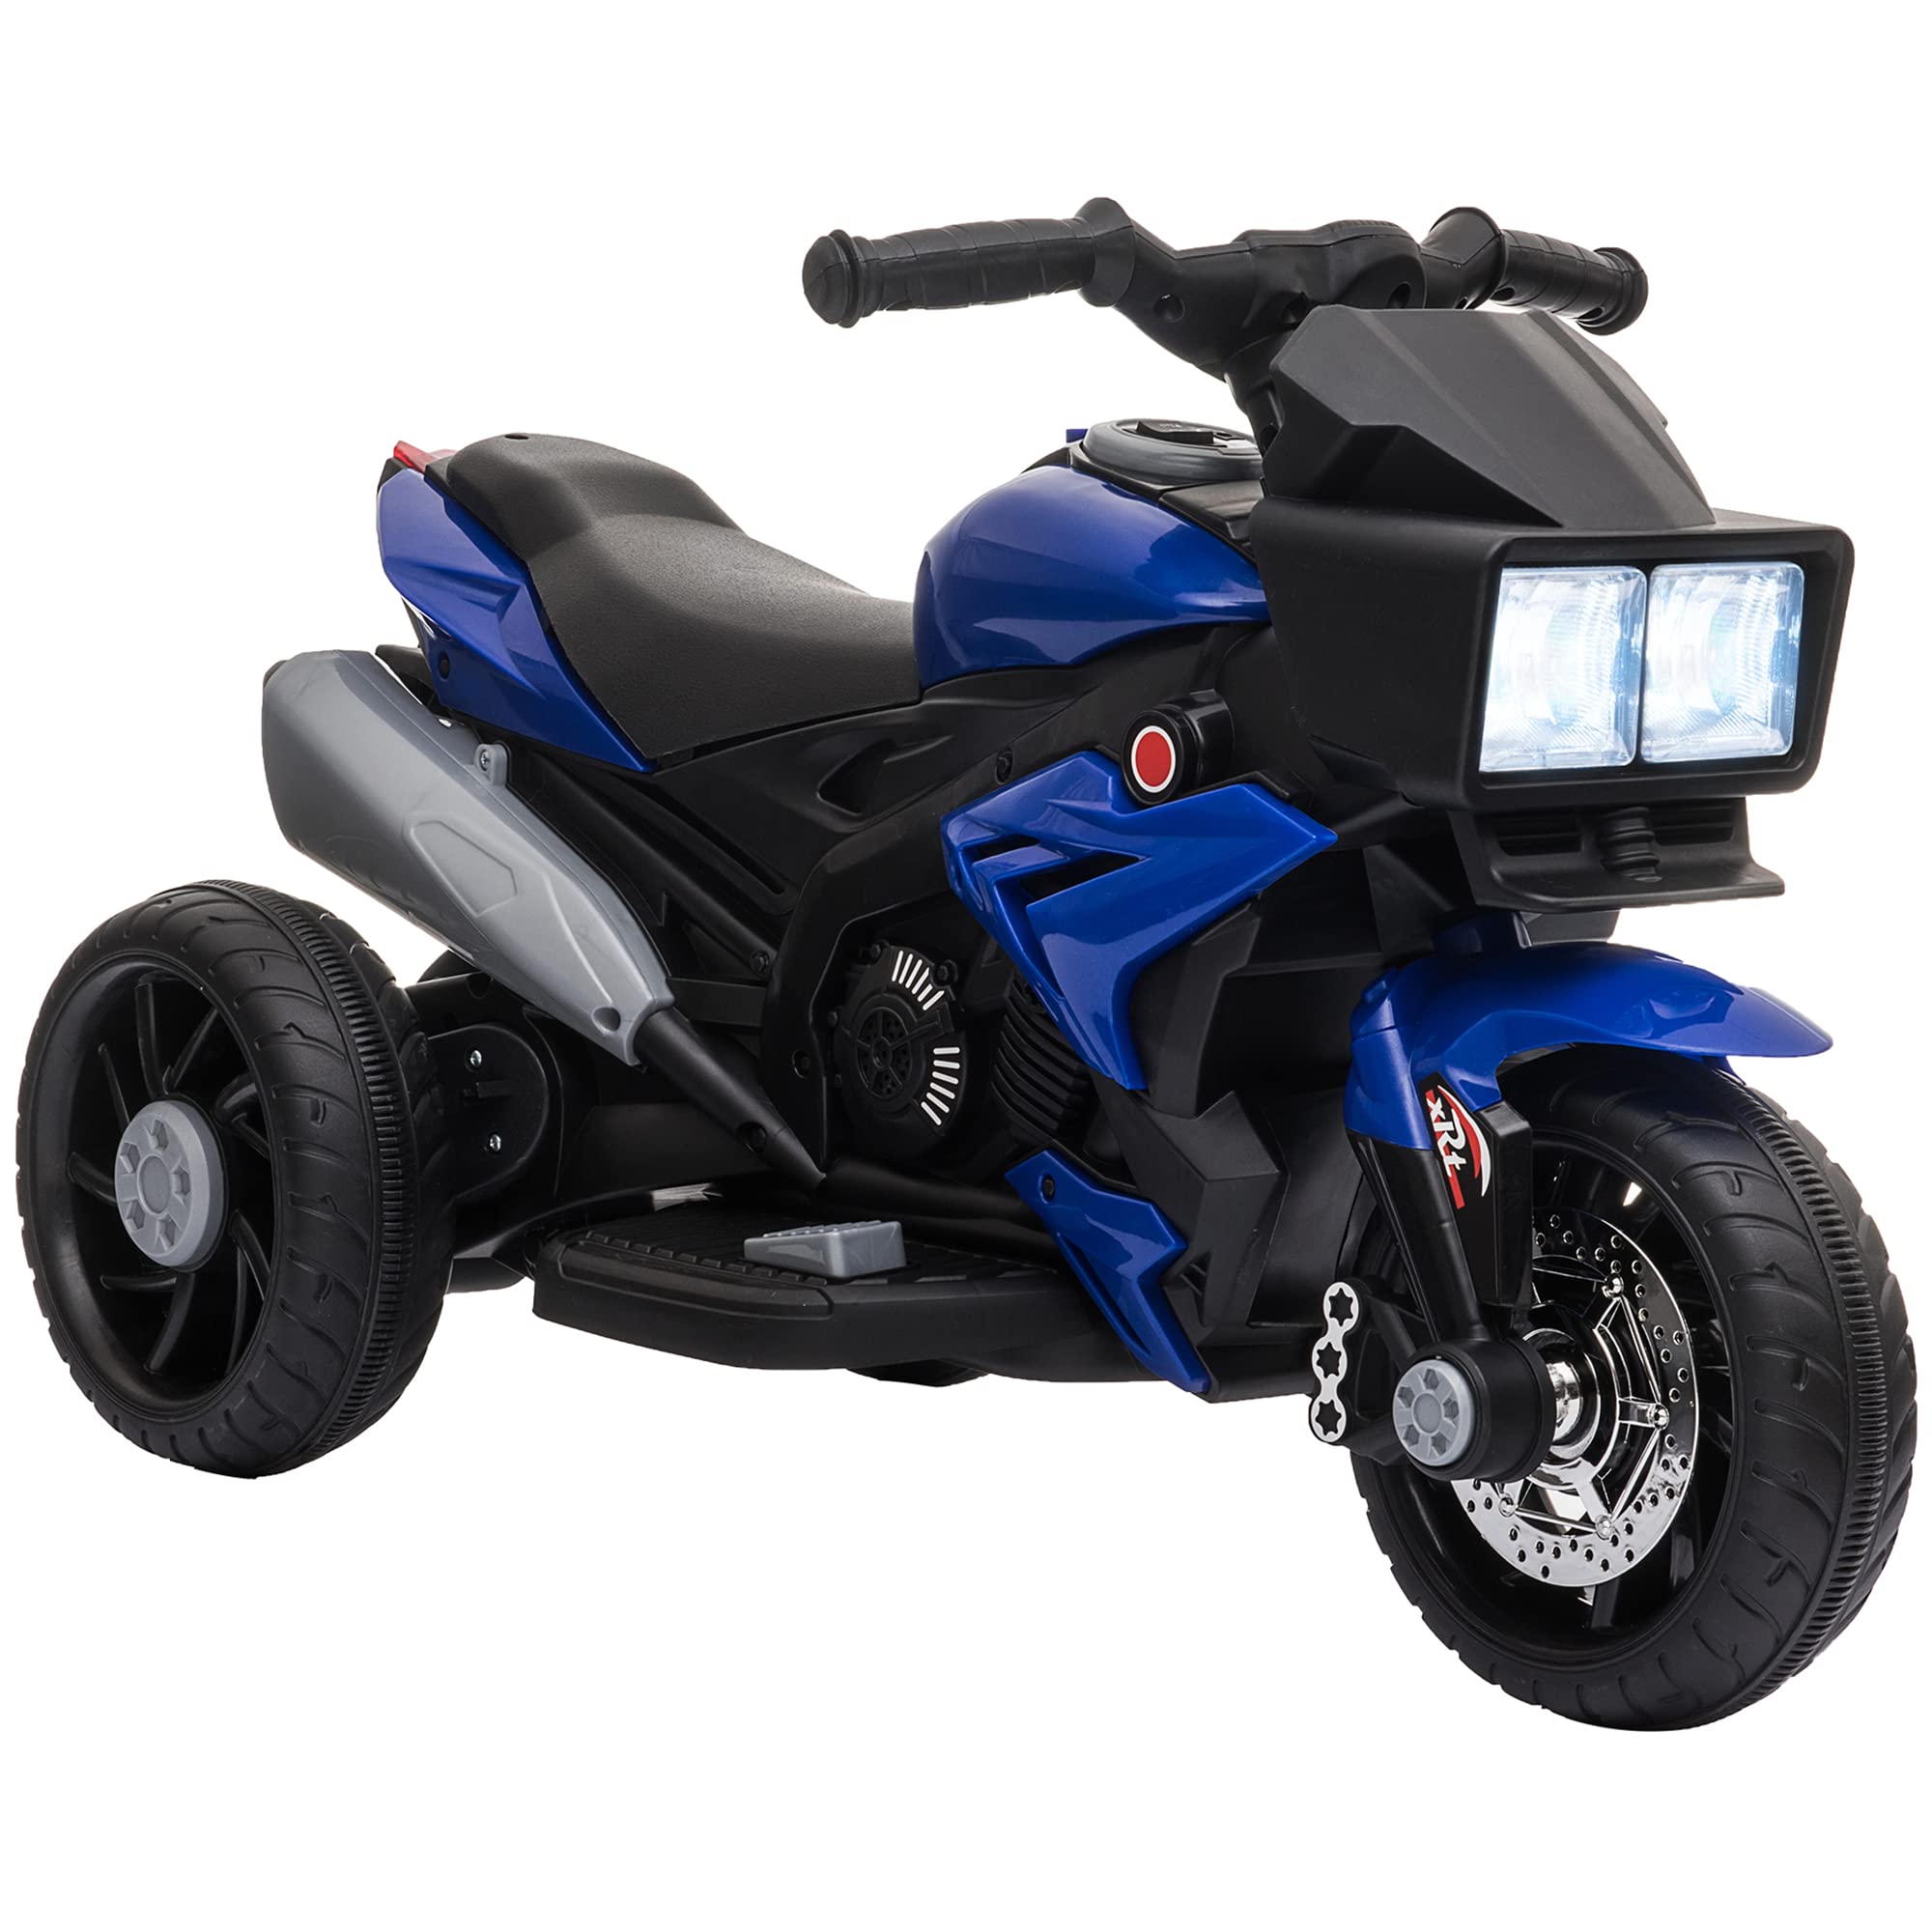 Aosom 6V Kids Motorcycle Ride-on Toy